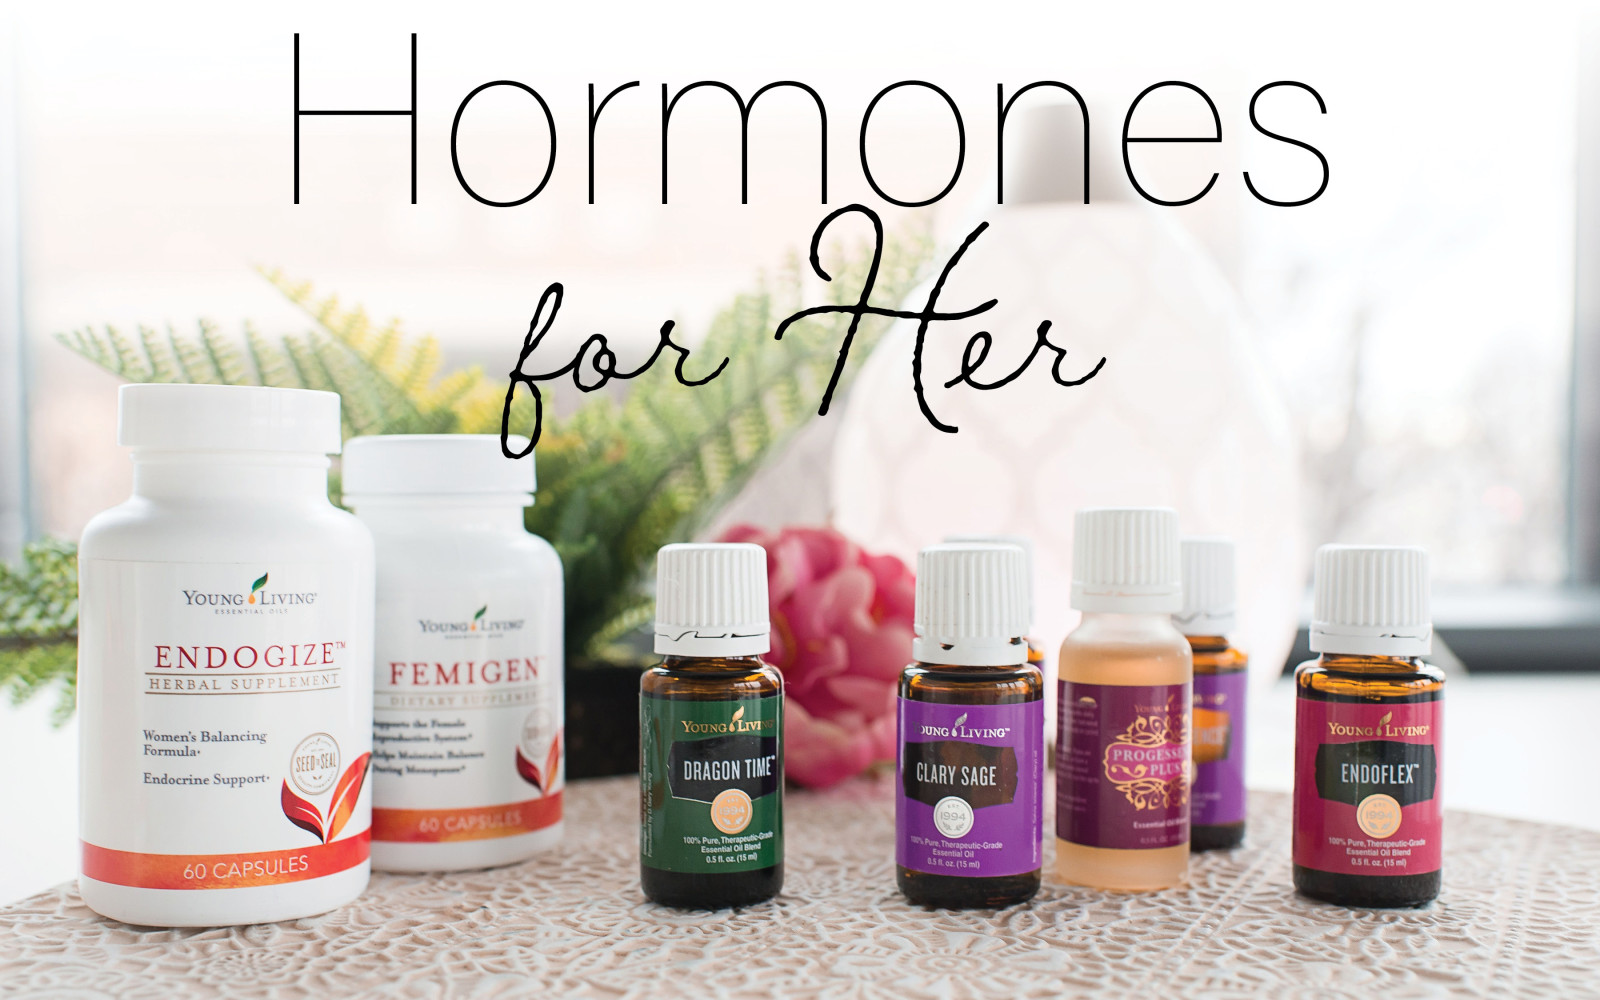 Hormones For Her